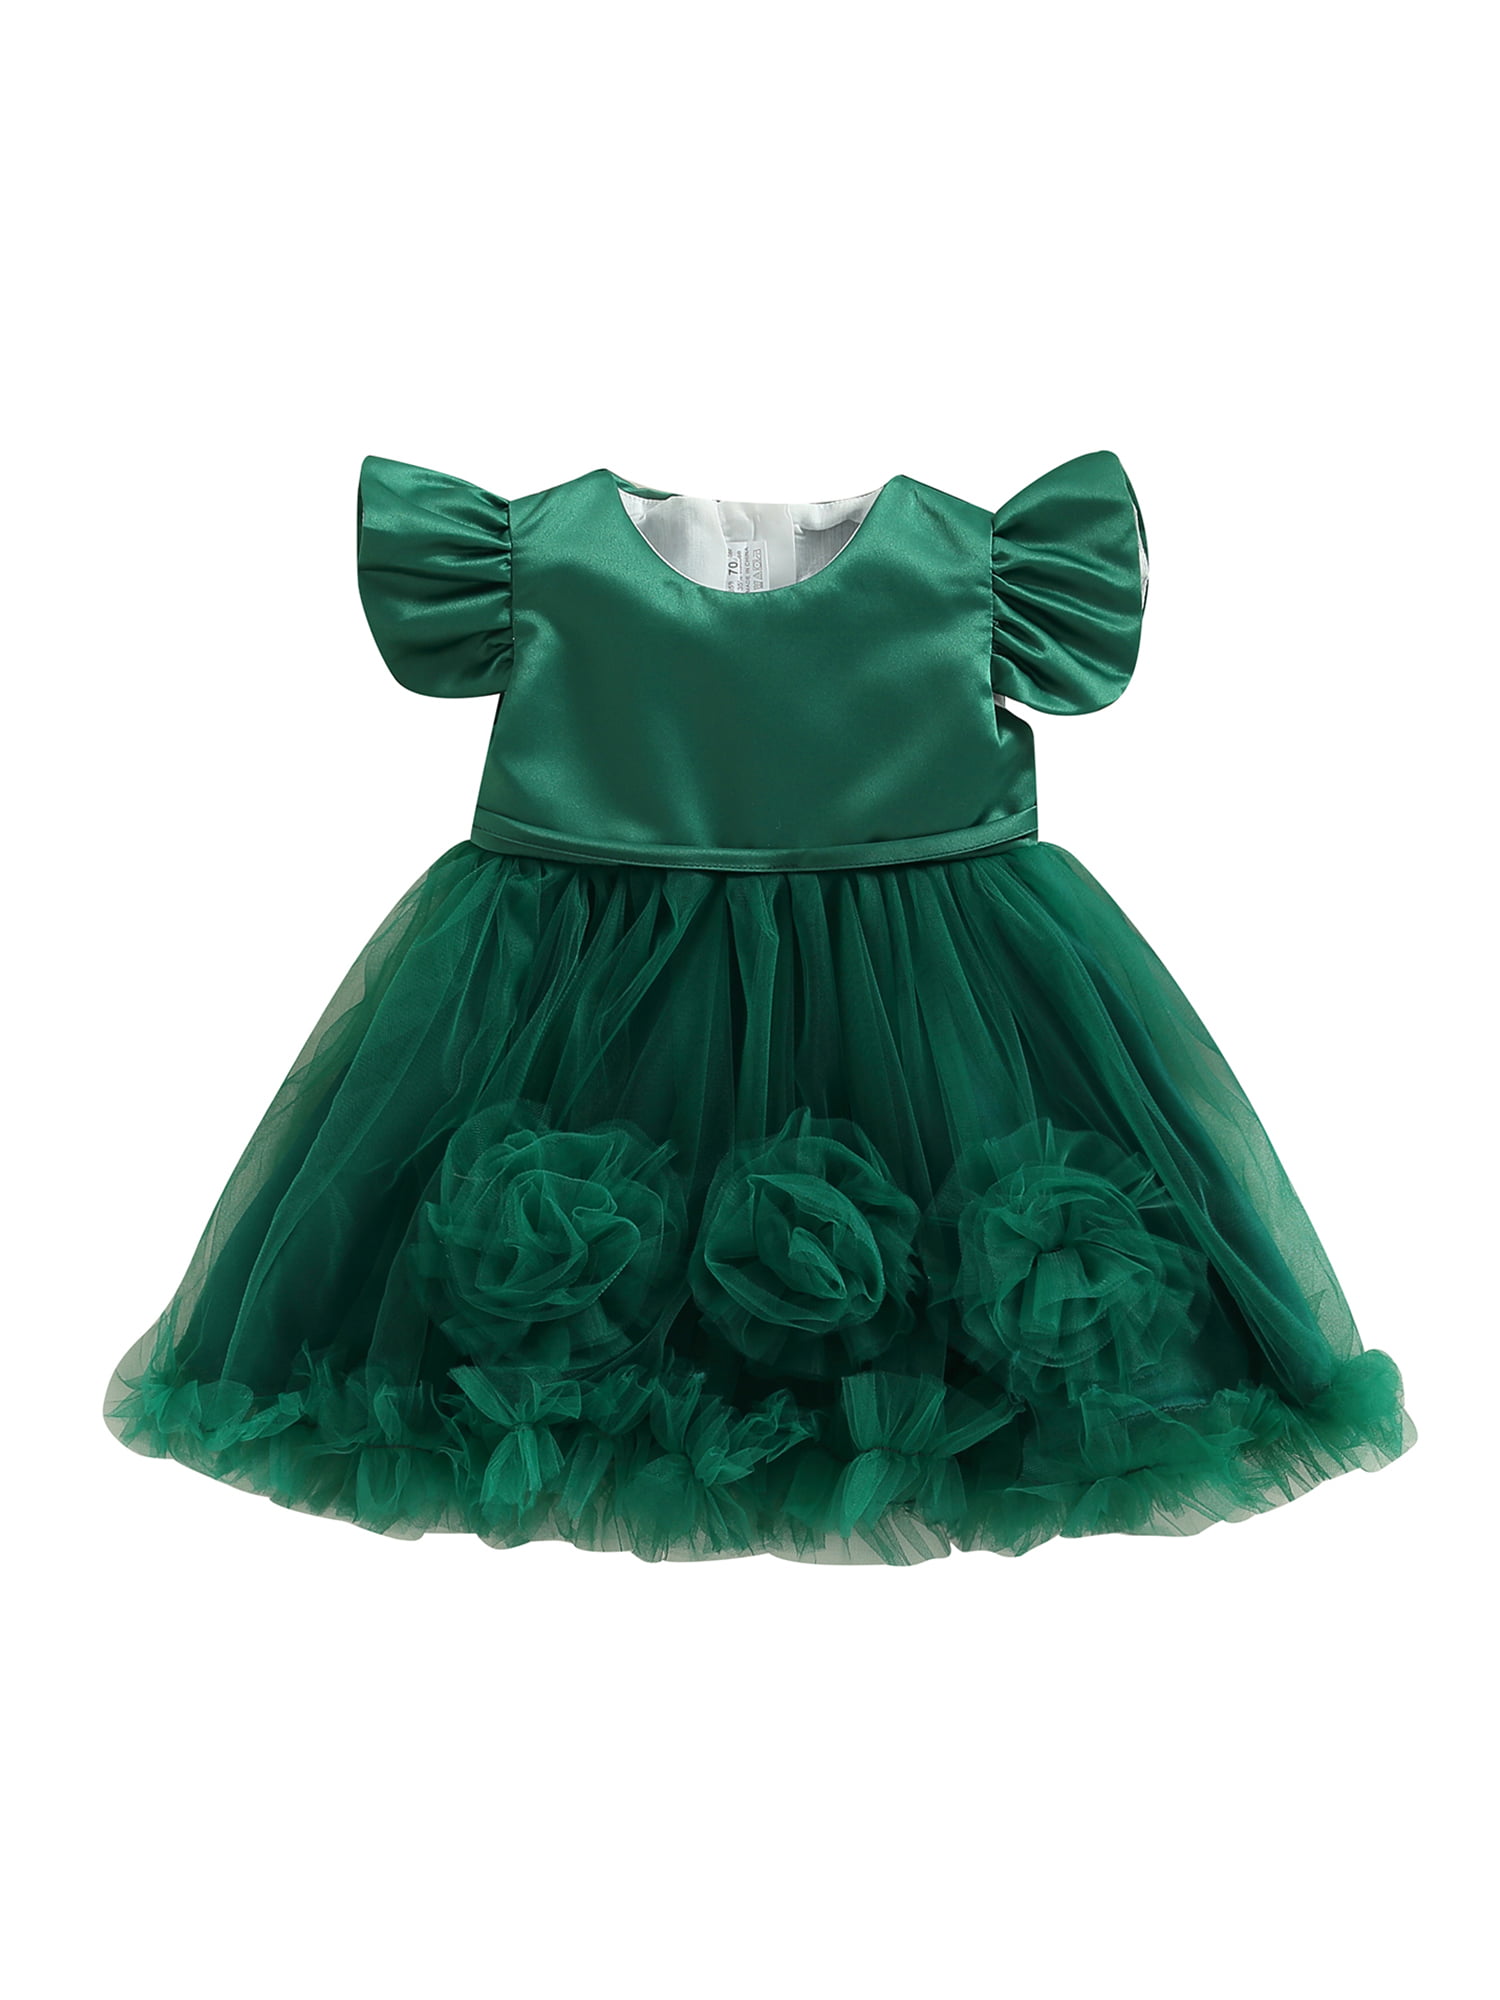 Bagilaanoe Toddler Baby Girls Sleeveless 3D Flower Princess Tulle Dress